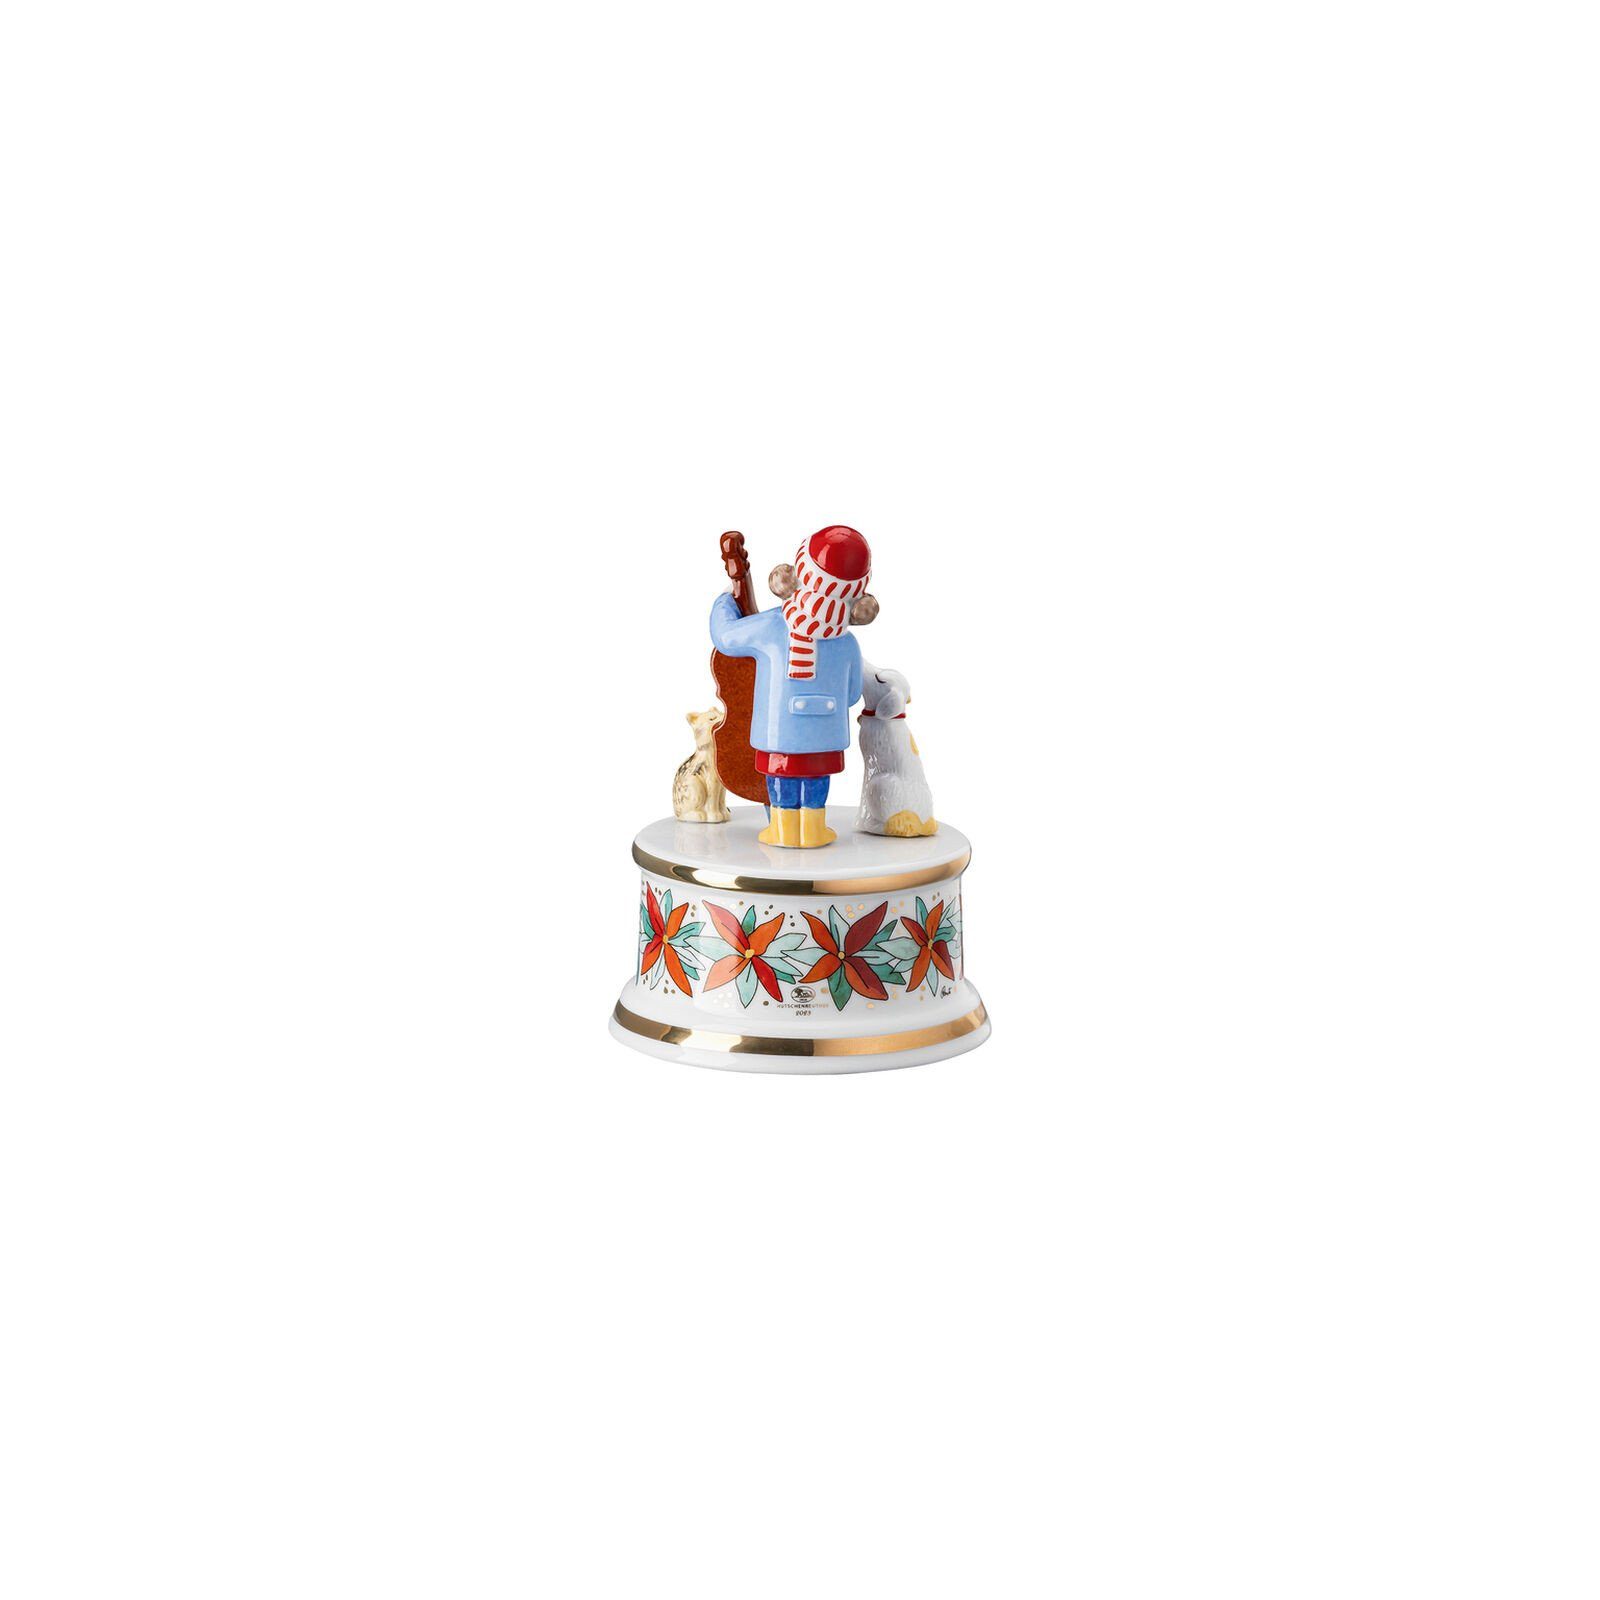 Spieluhr Porzellan Hutschenreuther klein 23 Sammelkollektion Weihnachtsklänge